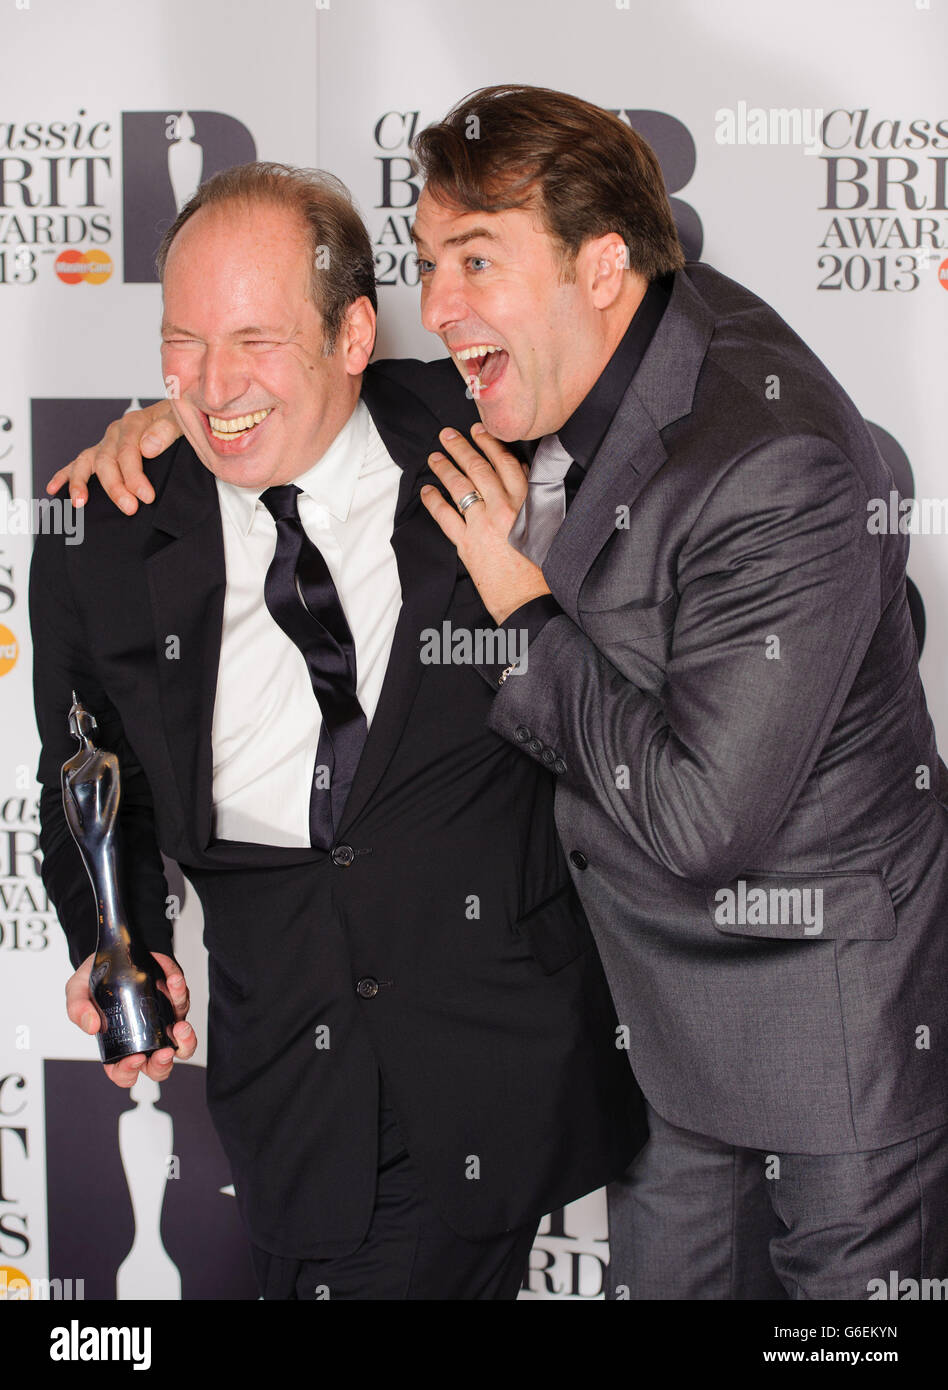 Ganador del compositor del año y destacada contribución a los premios de música Hans Zimmer (izquierda) con Jonathan Ross en la sala de prensa de los Classic Brit Awards 2013, Royal Albert Hall, Kensington Gore, Londres. Foto de stock